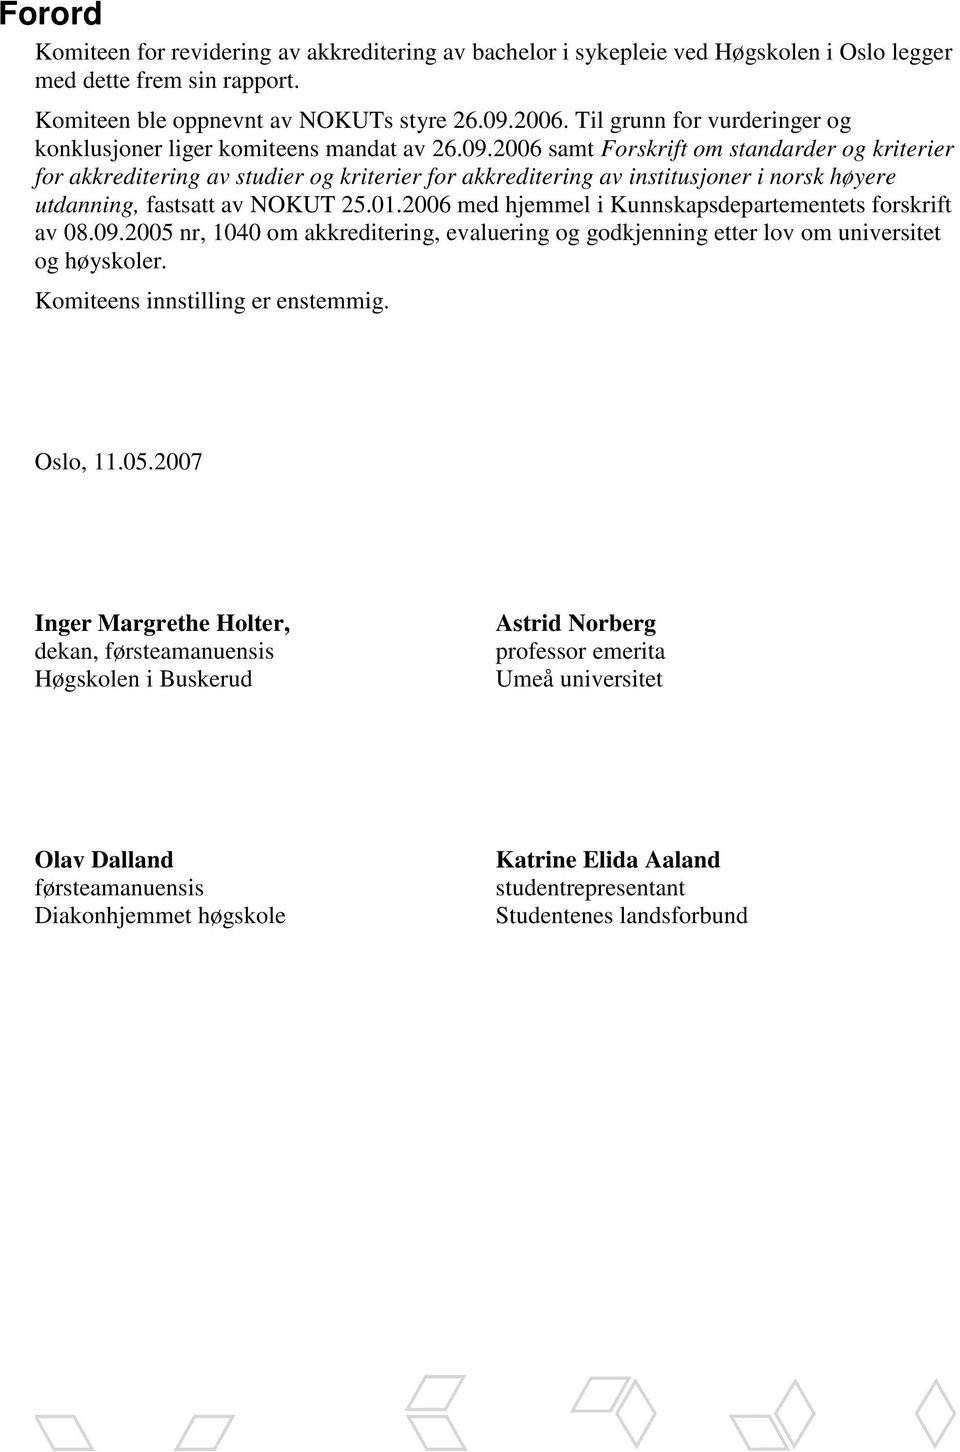 2006 samt Forskrift om standarder og kriterier for akkreditering av studier og kriterier for akkreditering av institusjoner i norsk høyere utdanning, fastsatt av NOKUT 25.01.